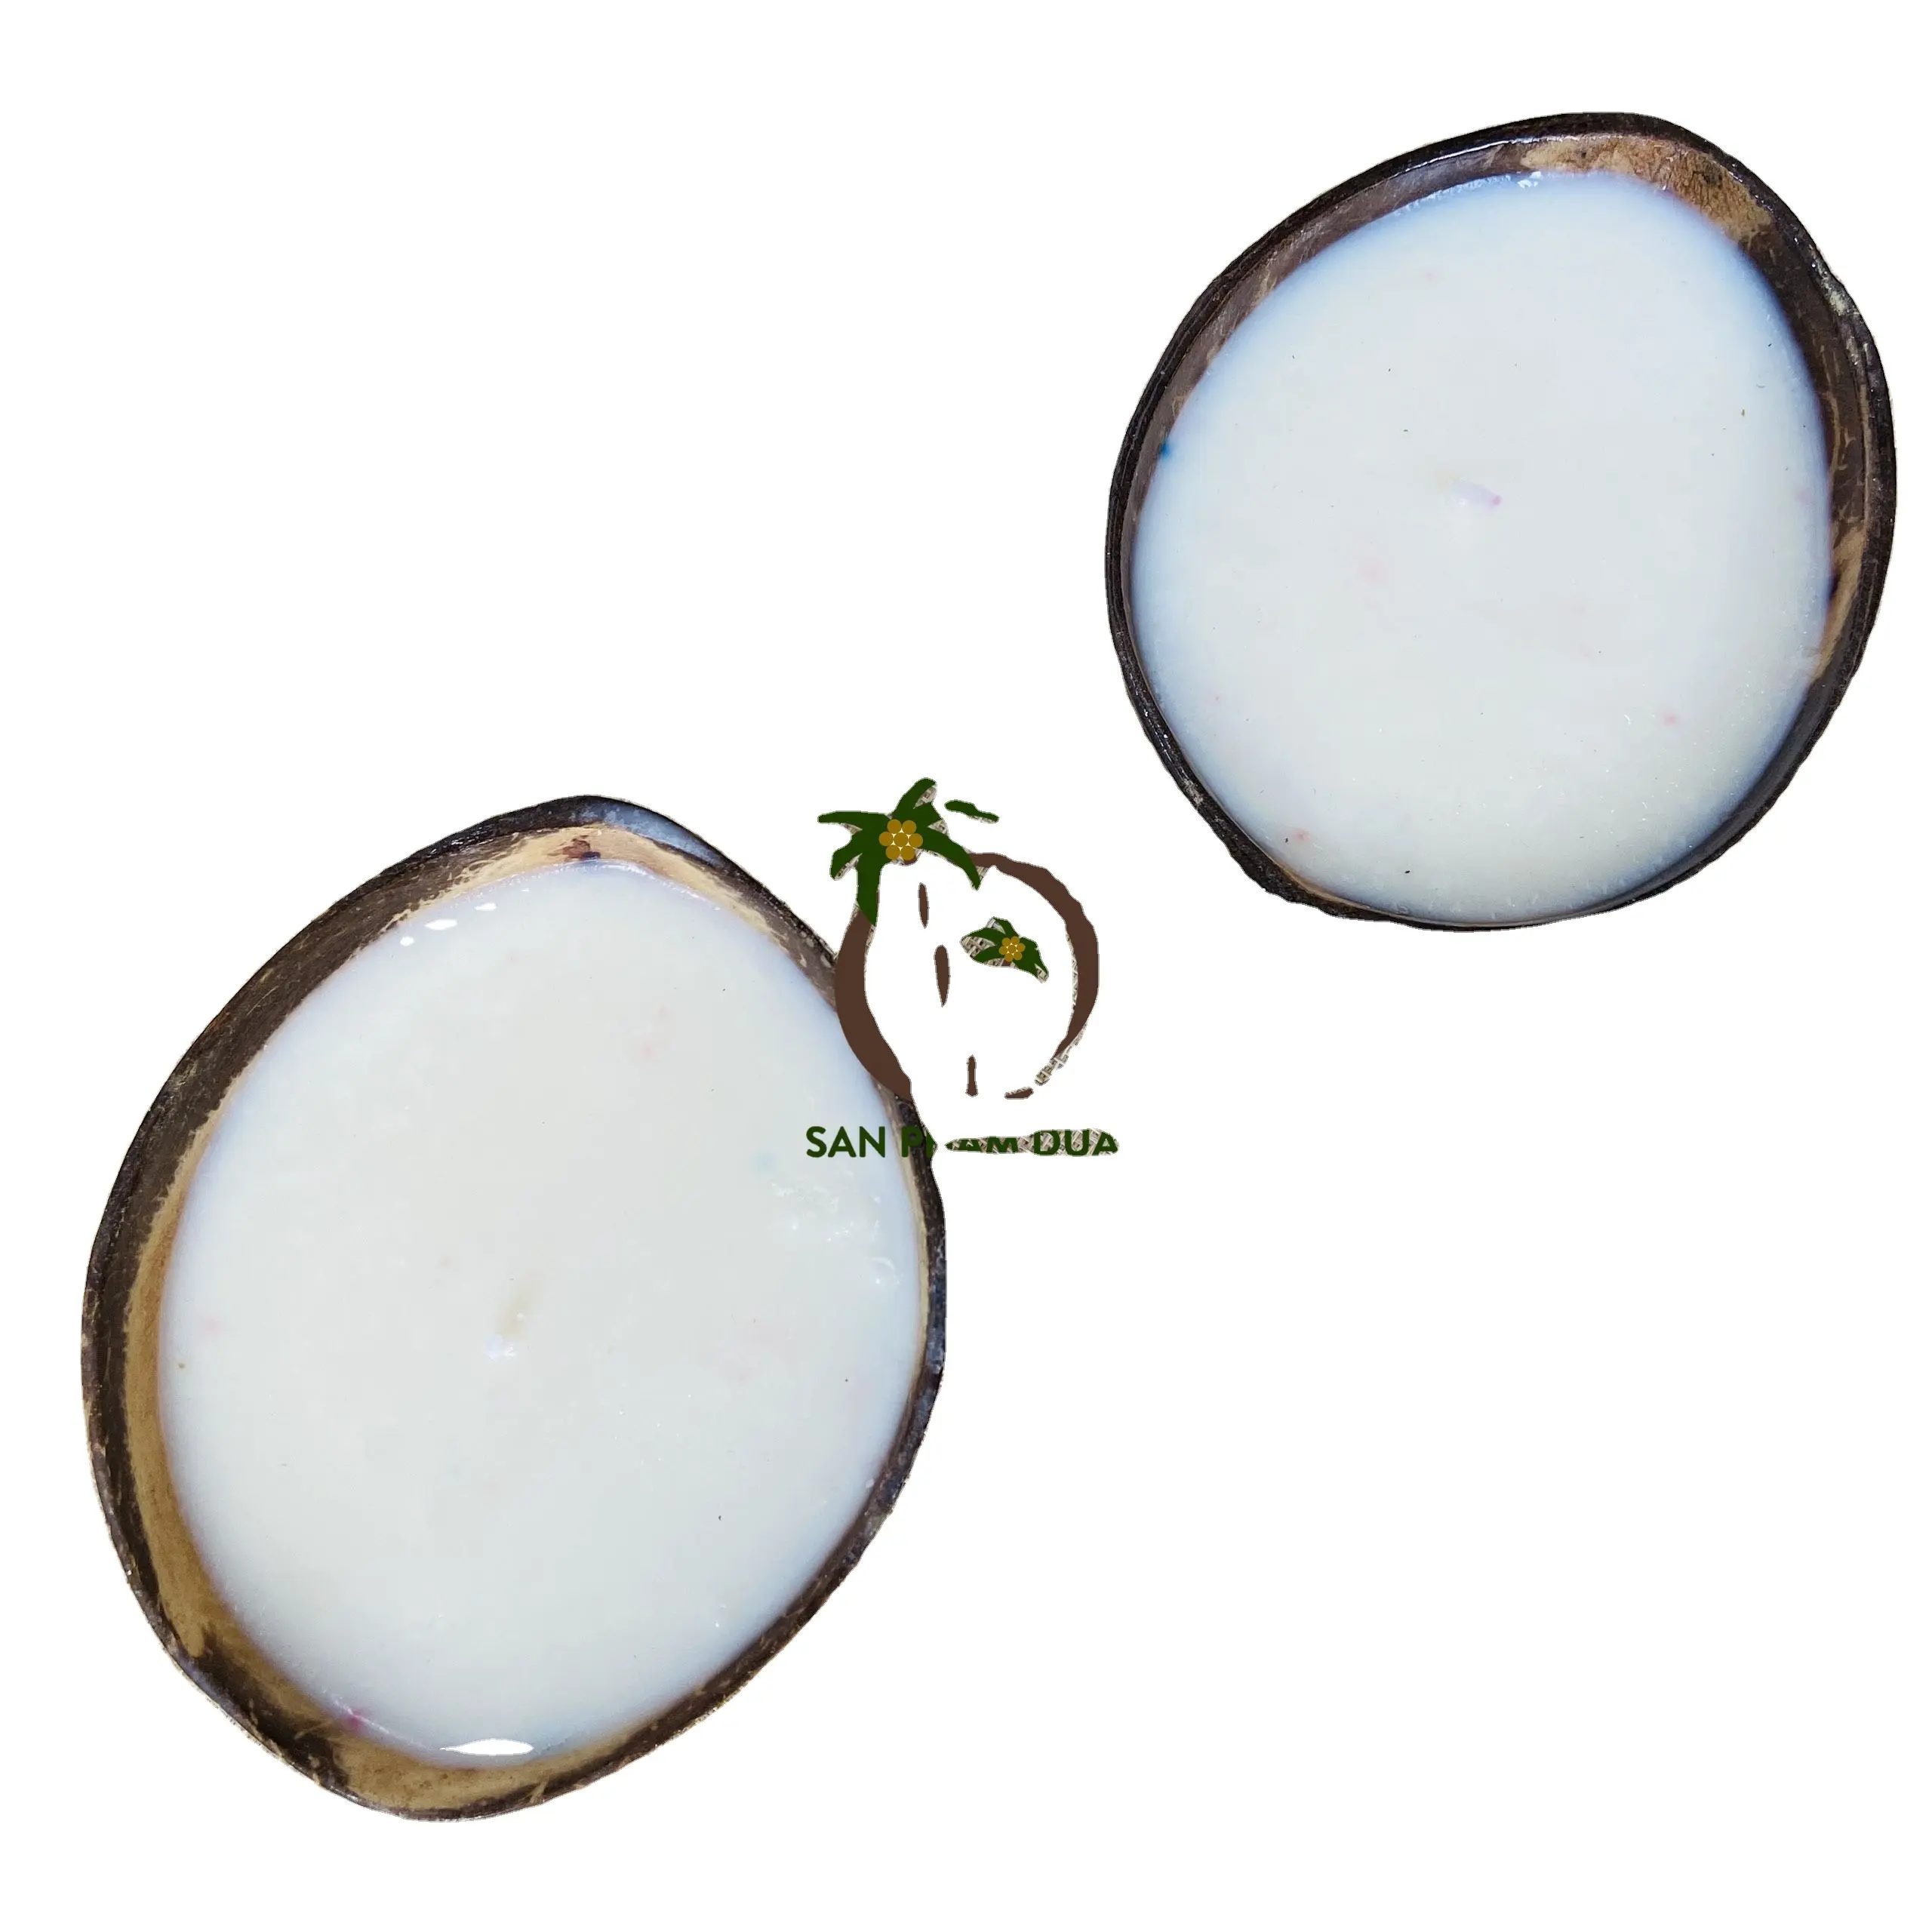 कोको थोक नारियल के खोल मोमबत्ती कटोरा/नारियल के खोल लकड़ी बाती के साथ मोमबत्ती सोया मोम और पाम मोम और कपास वियतनाम में बाती